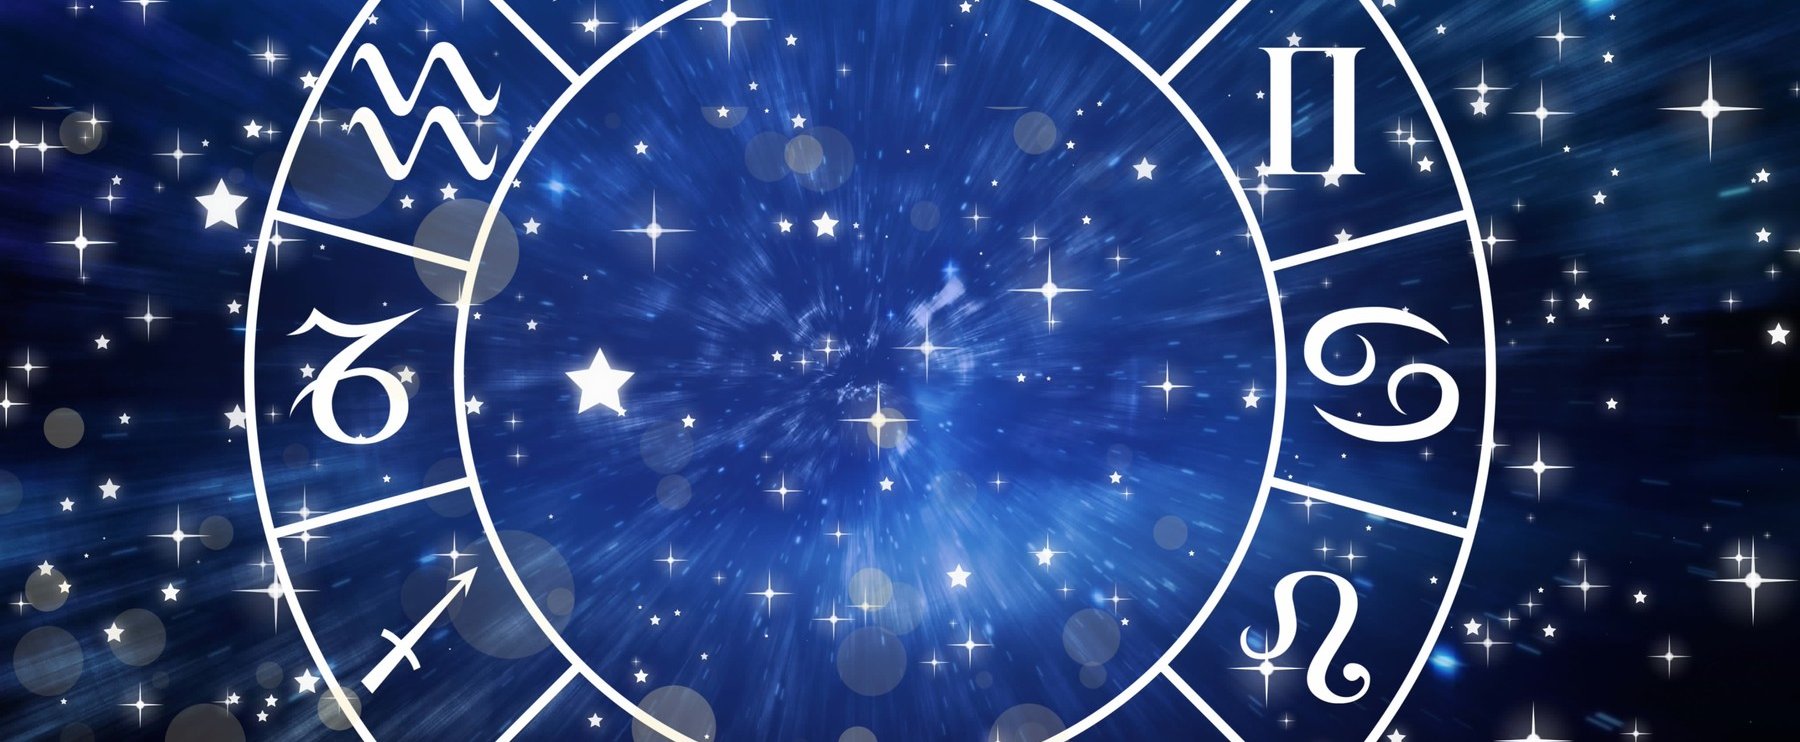 Napi horoszkóp - július 2: az egyik csillagjegy elismerést kap ezen a napon